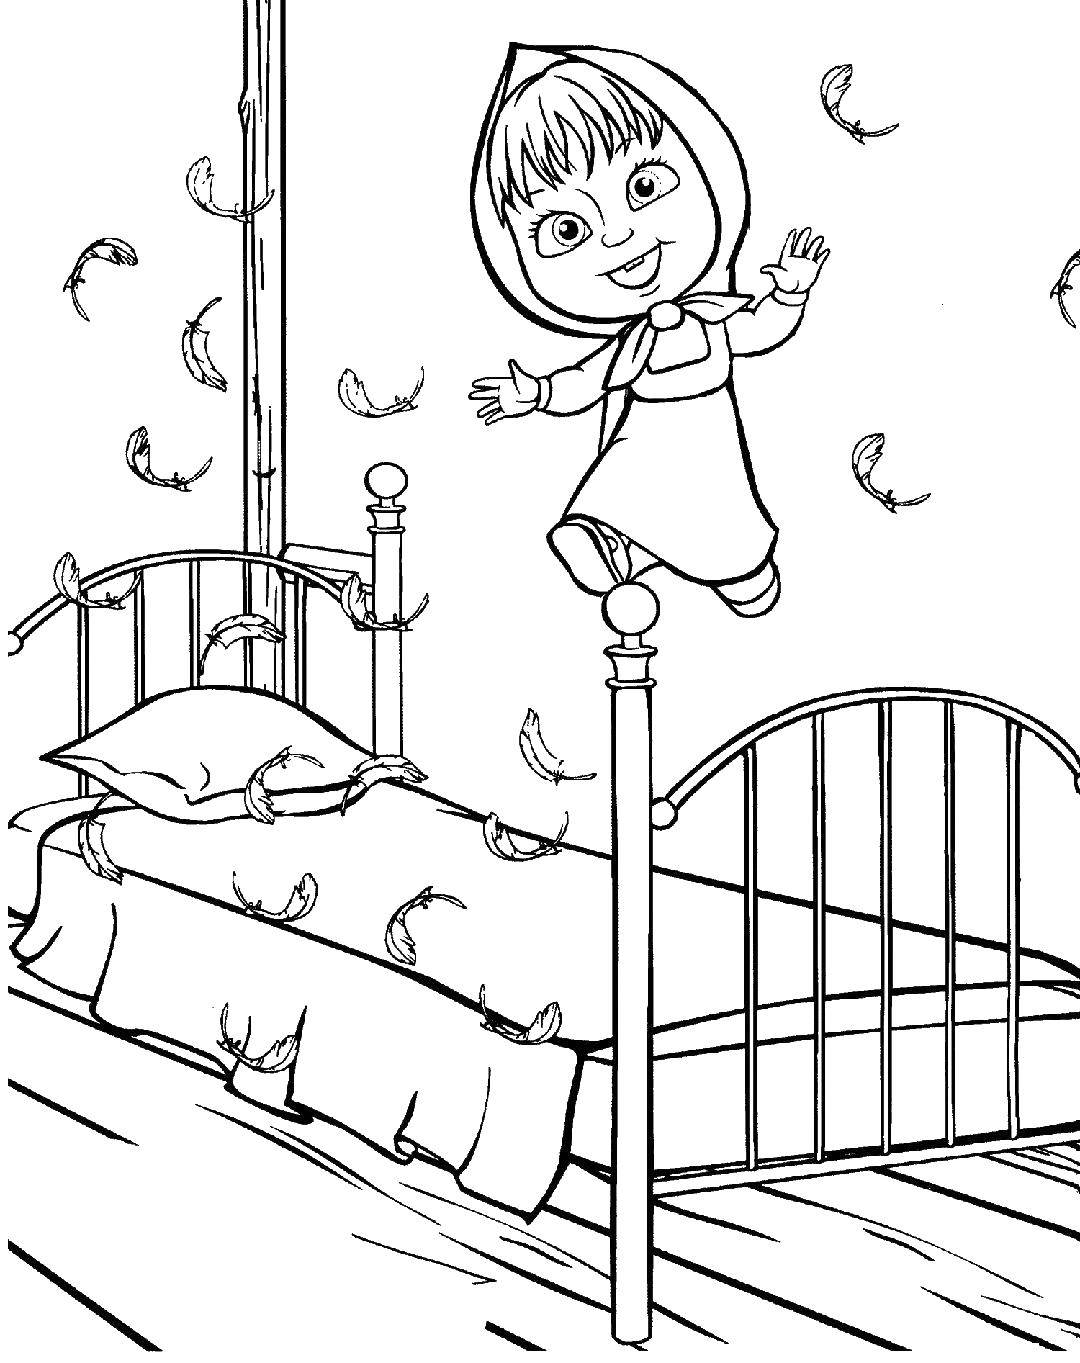 Название: Раскраска Маша прыгает на кровати. Категория: Кровать. Теги: кровать, Маша, сказка.